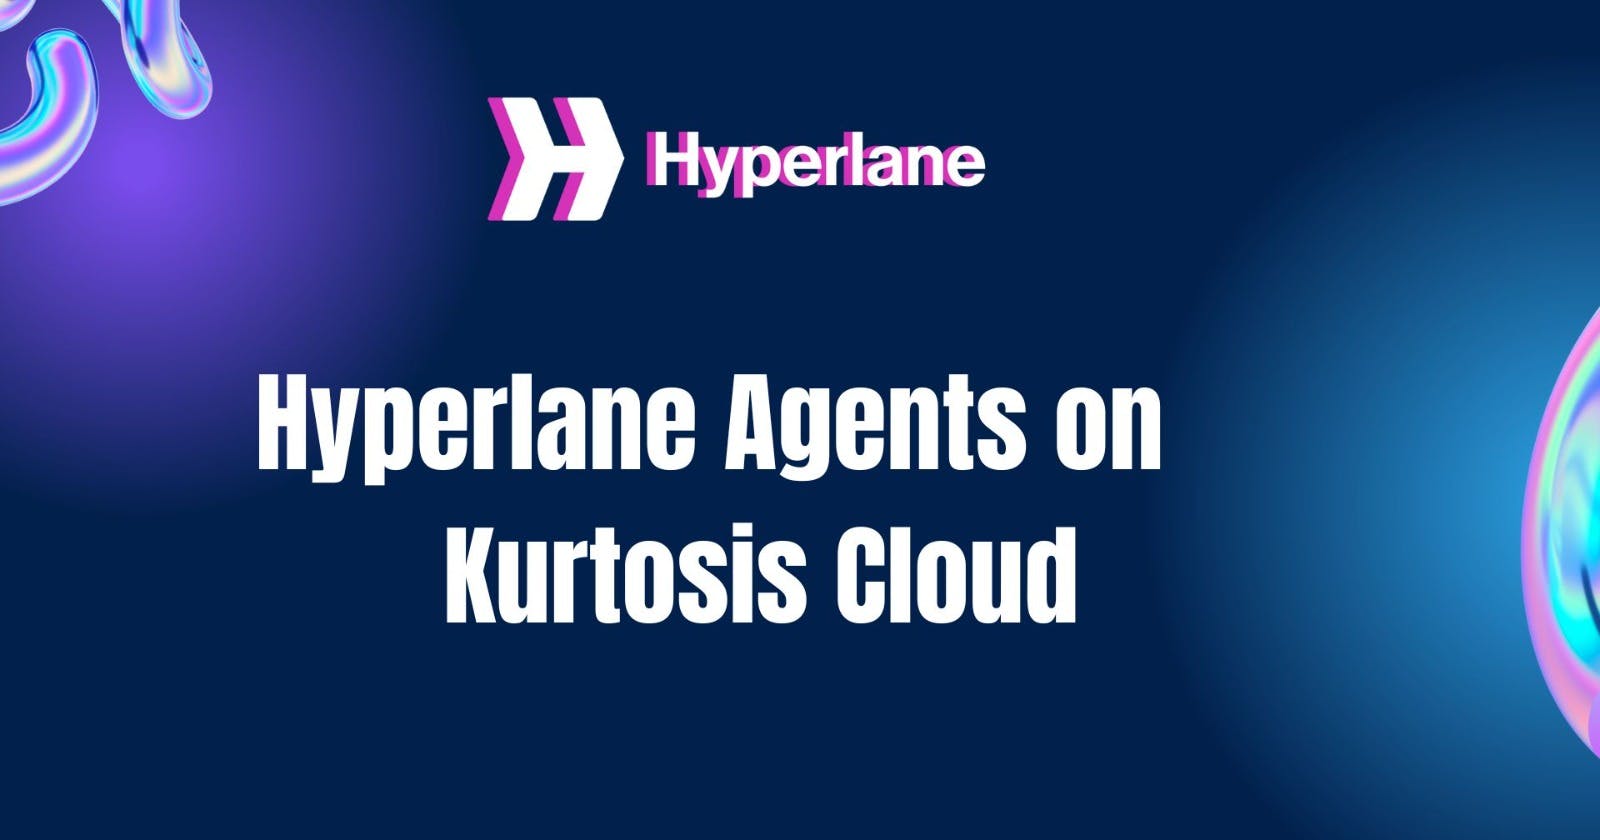 Run Hyperlane agents on Kurtosis Cloud